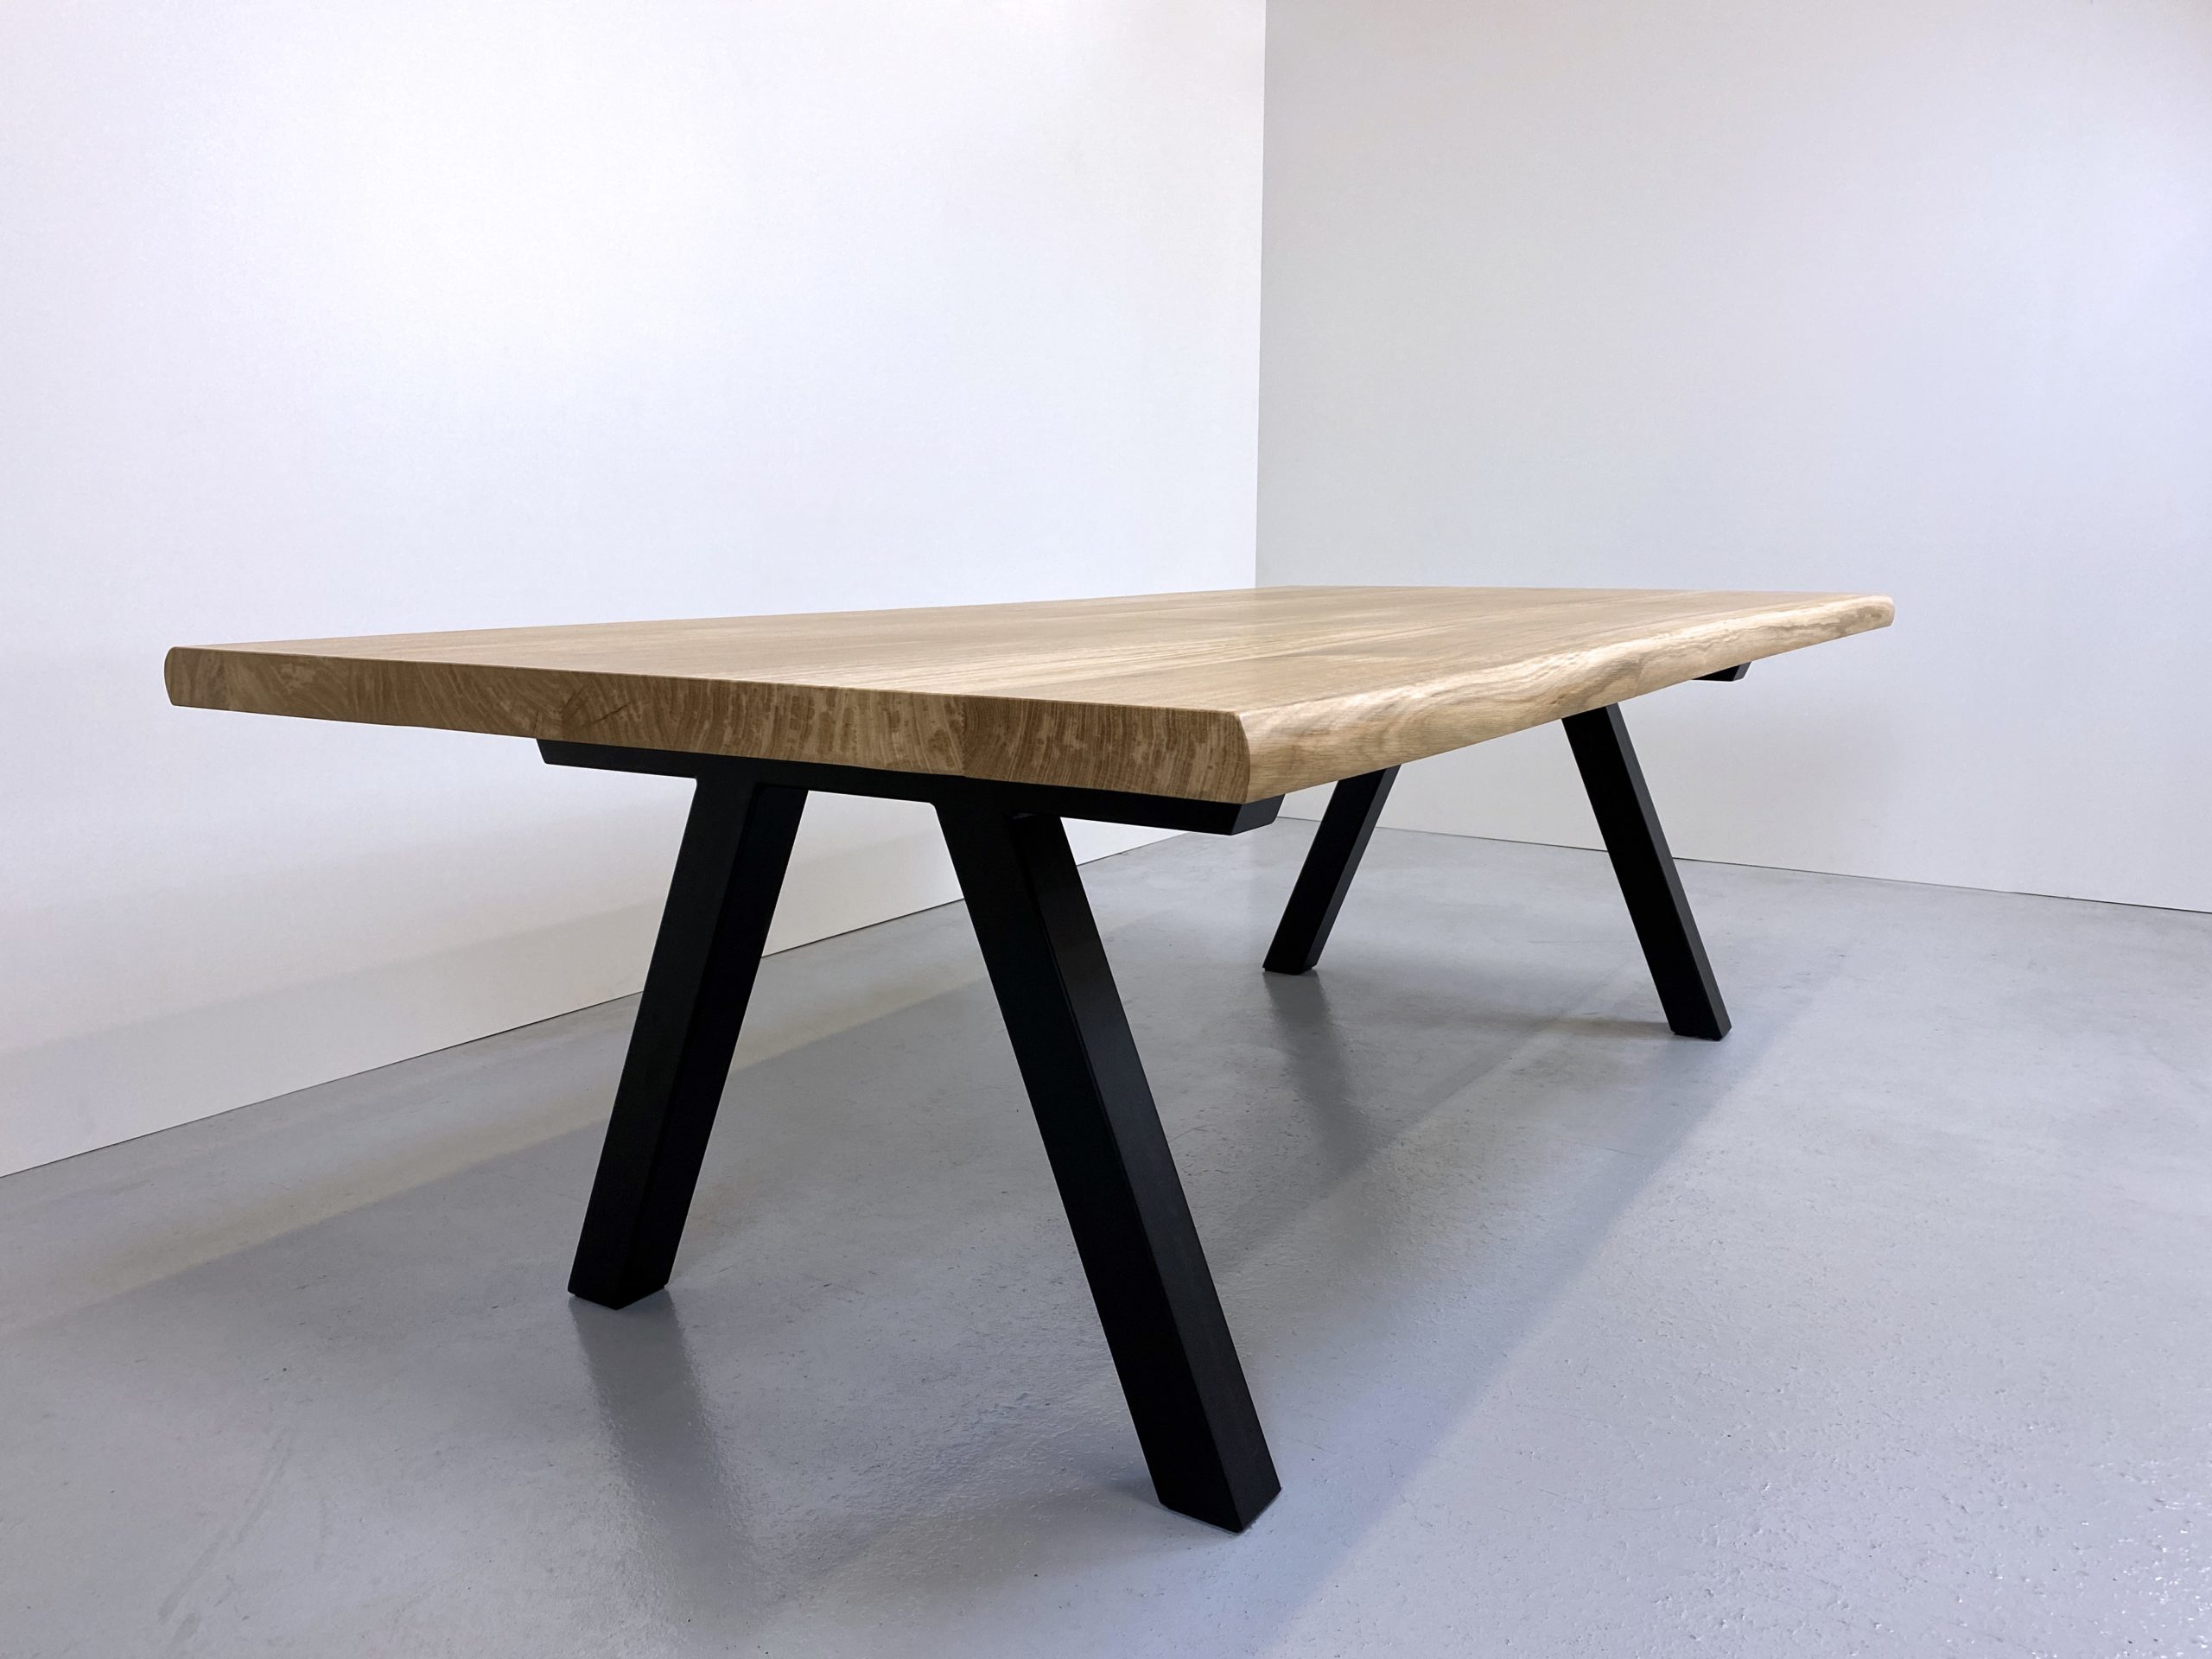 table à manger bois et métal / 240 x 120 x H 75 cm / chêne authentique et pied noir / ARTMETA